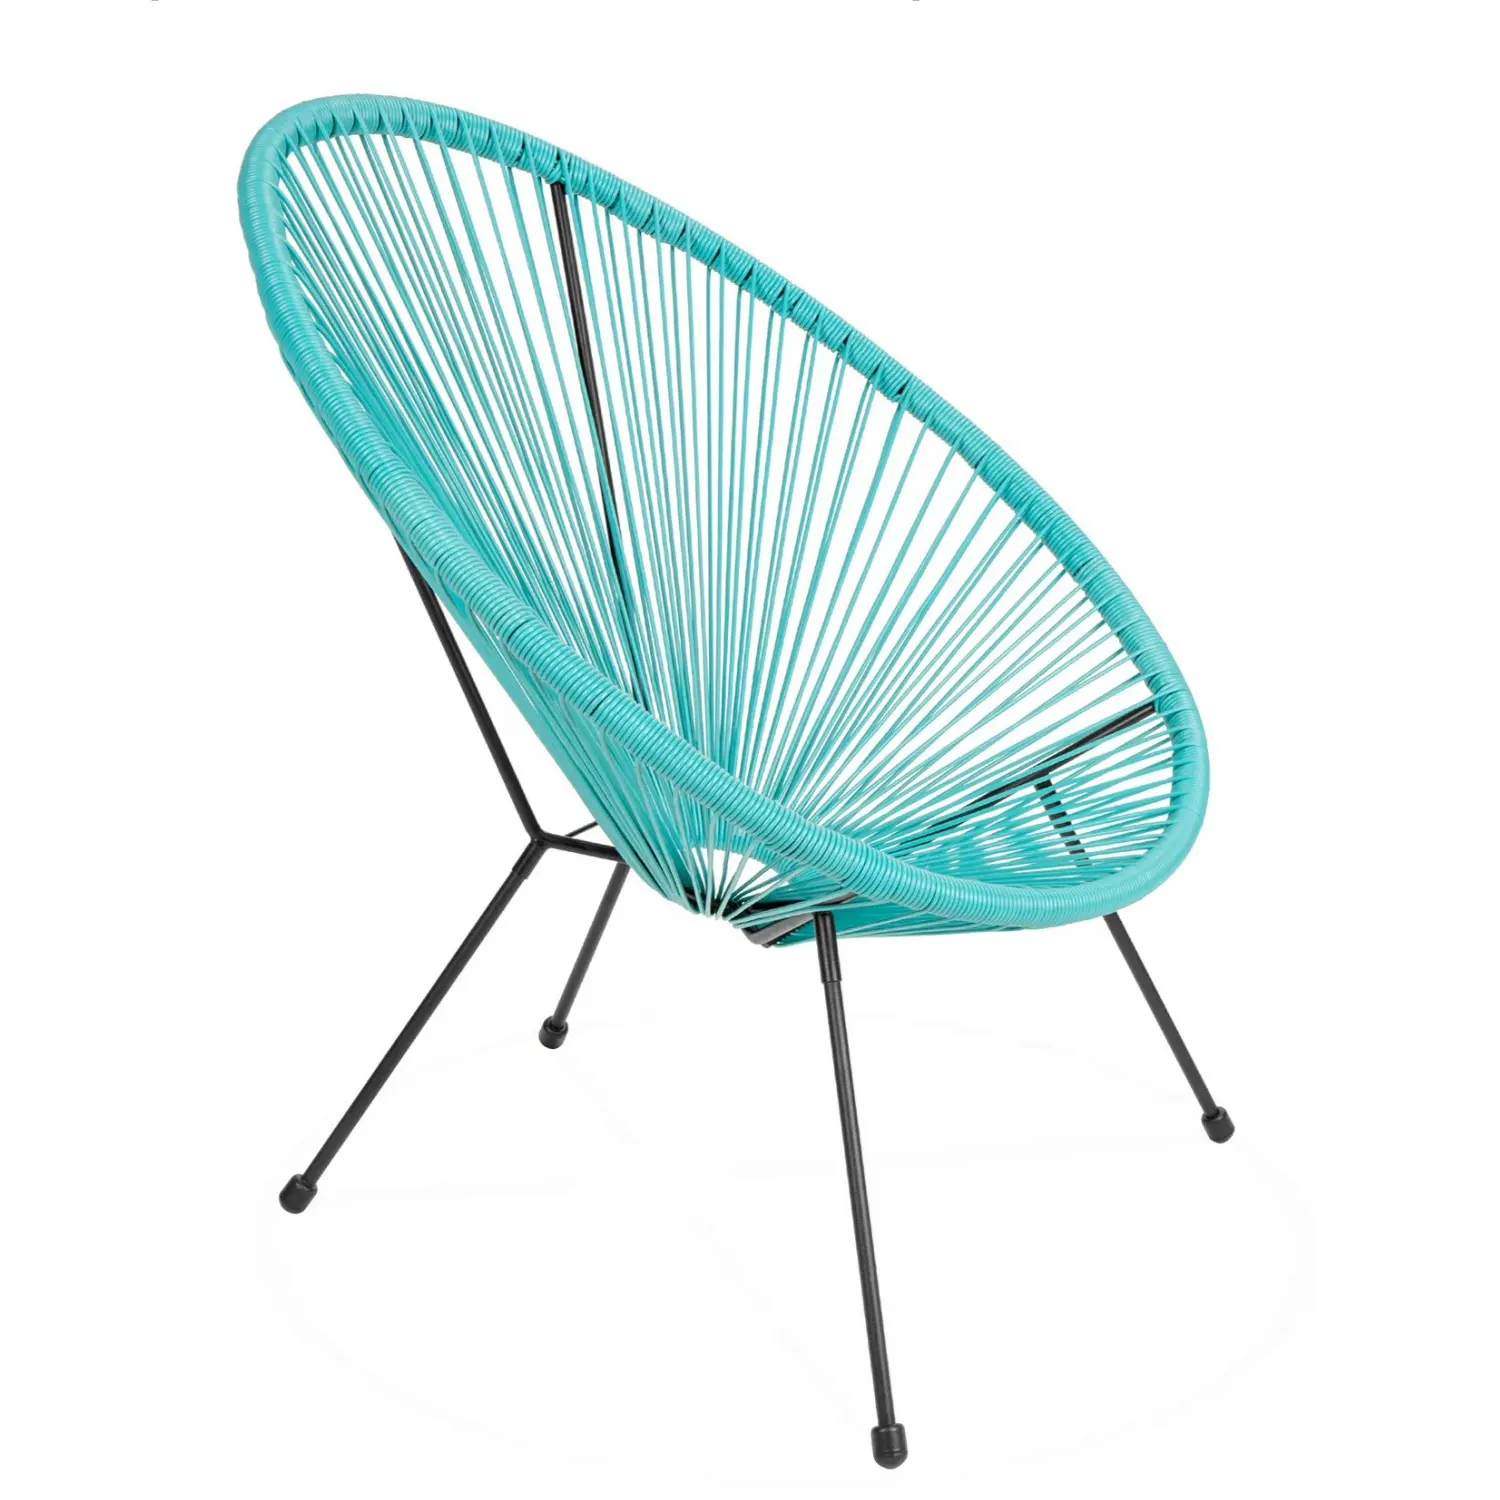 مقعد منخفض طقم للاسترخاء في البسترو، مقعد صغير من النسيج المفتوح مصنوع من الخيط البلاستيكي، كرسي واحد